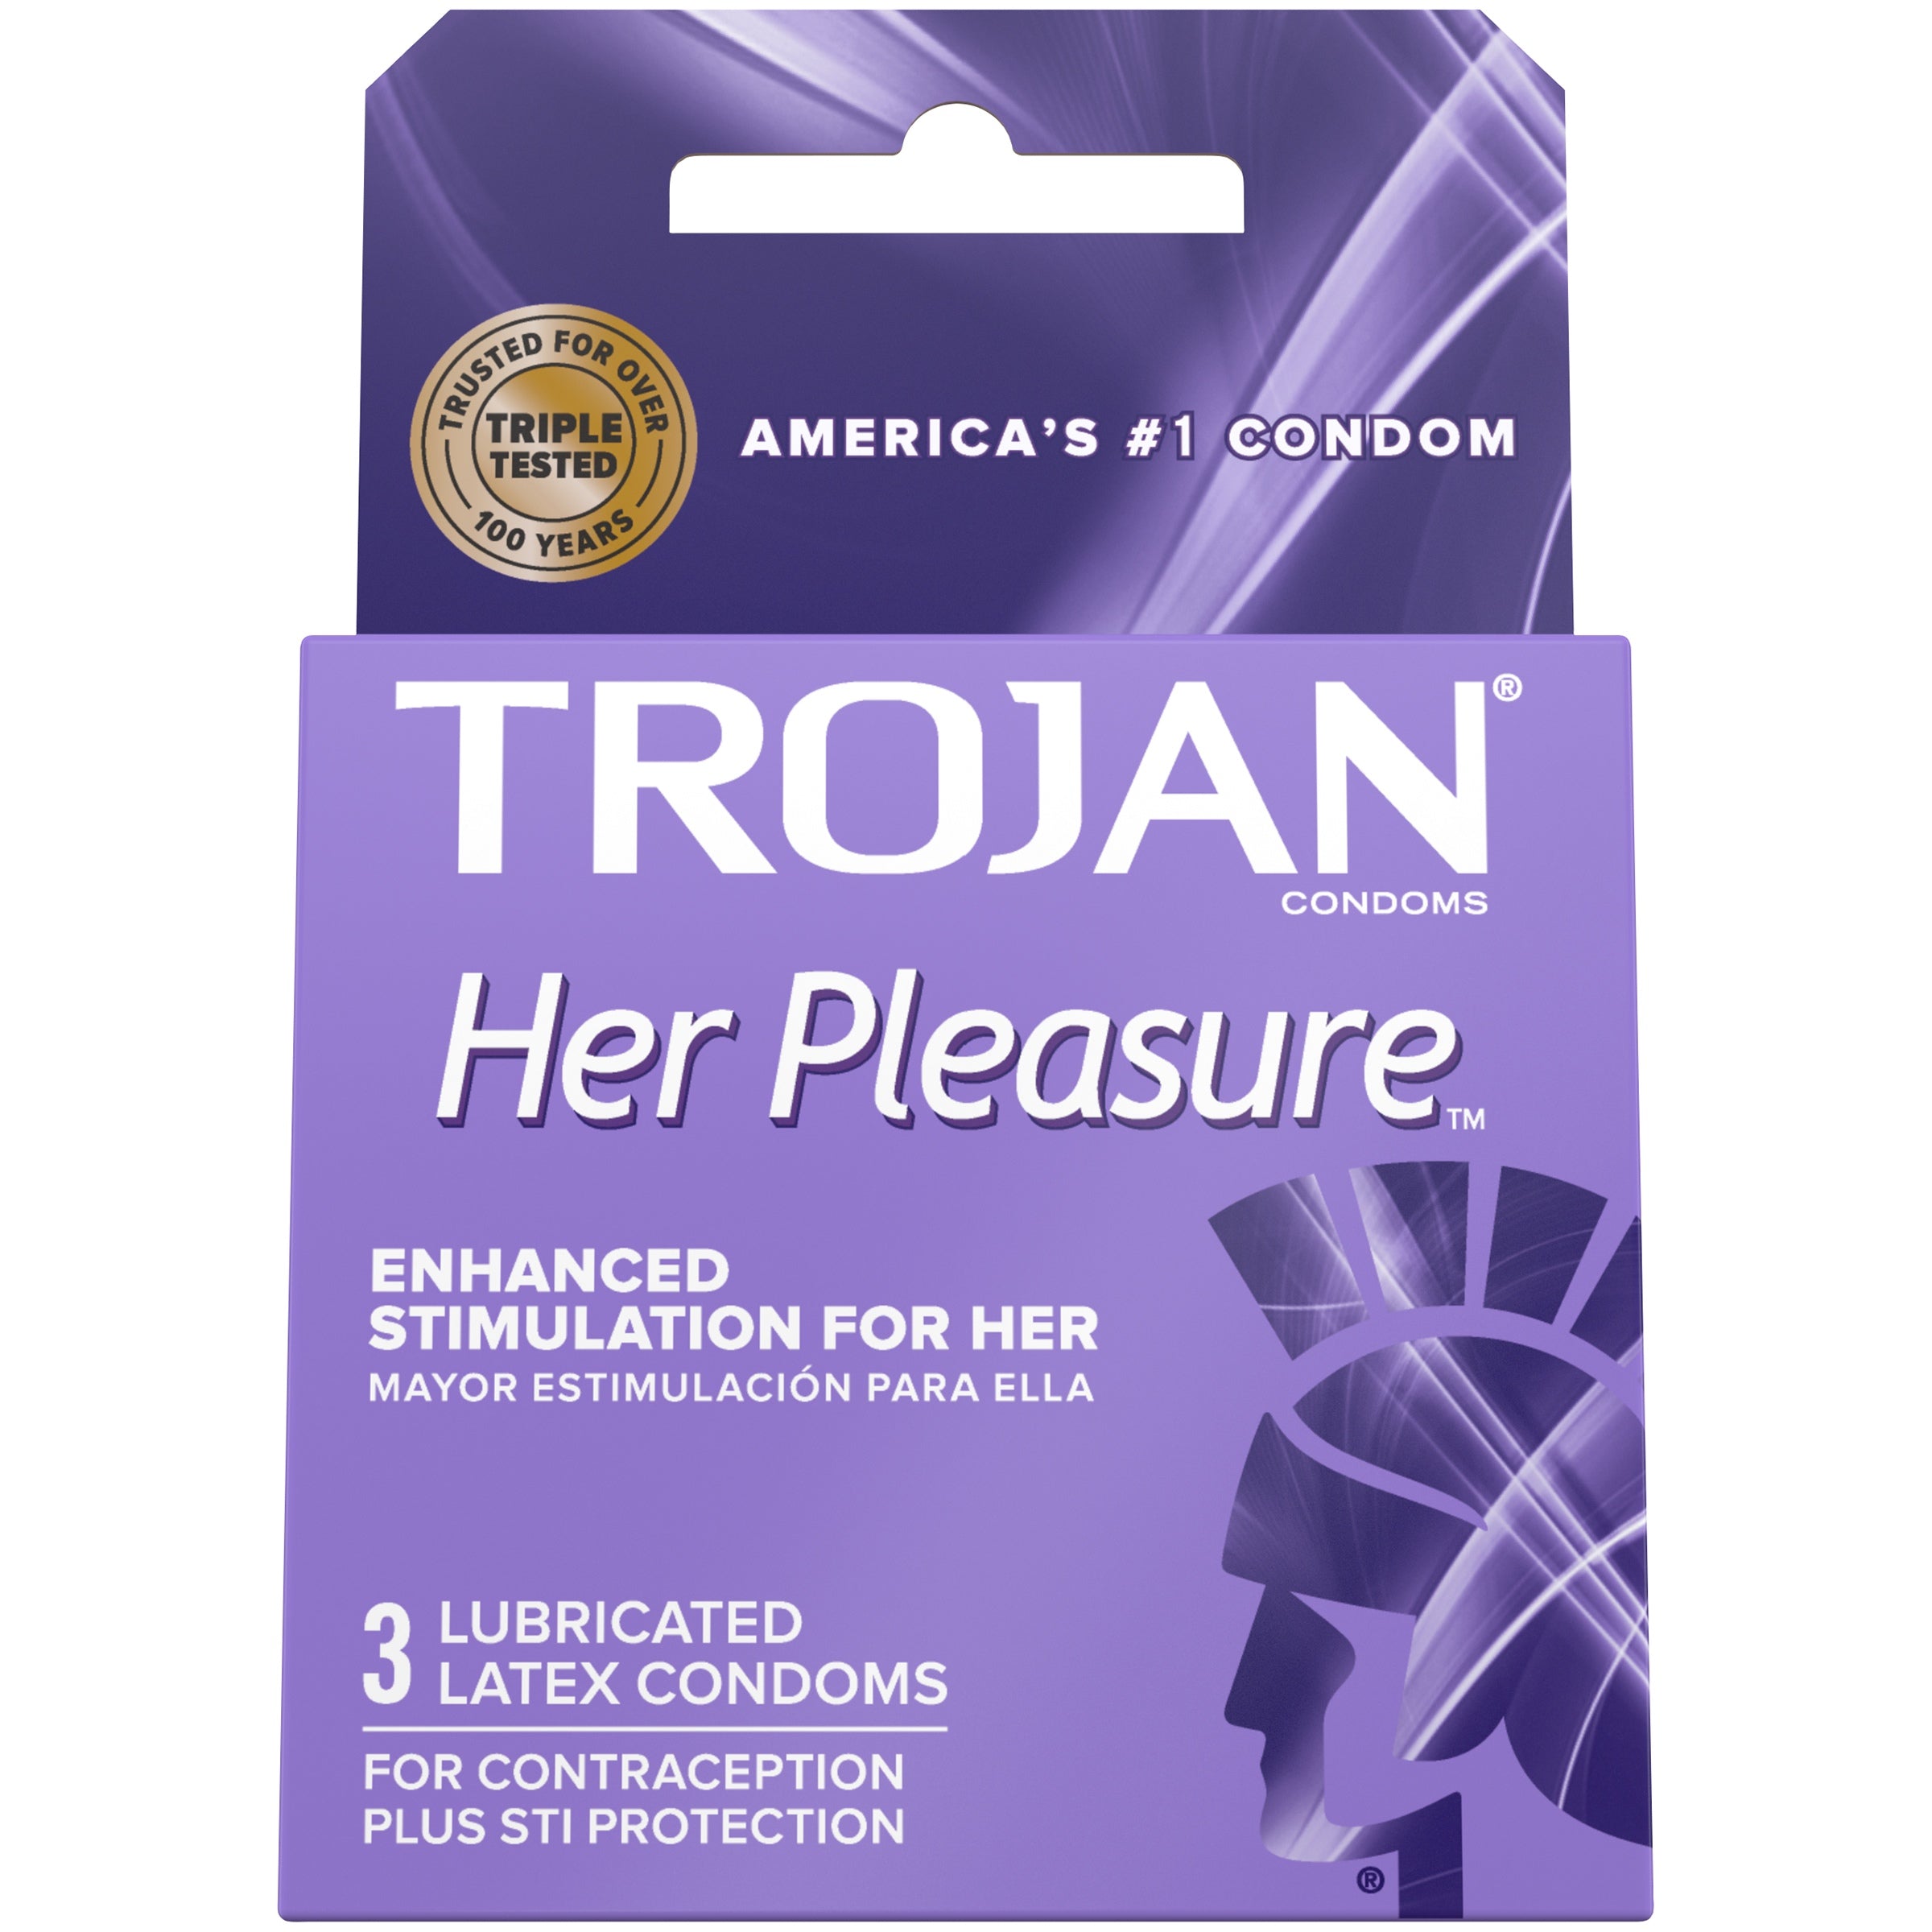 Trojan Her Pleasure Premium Latex Condoms